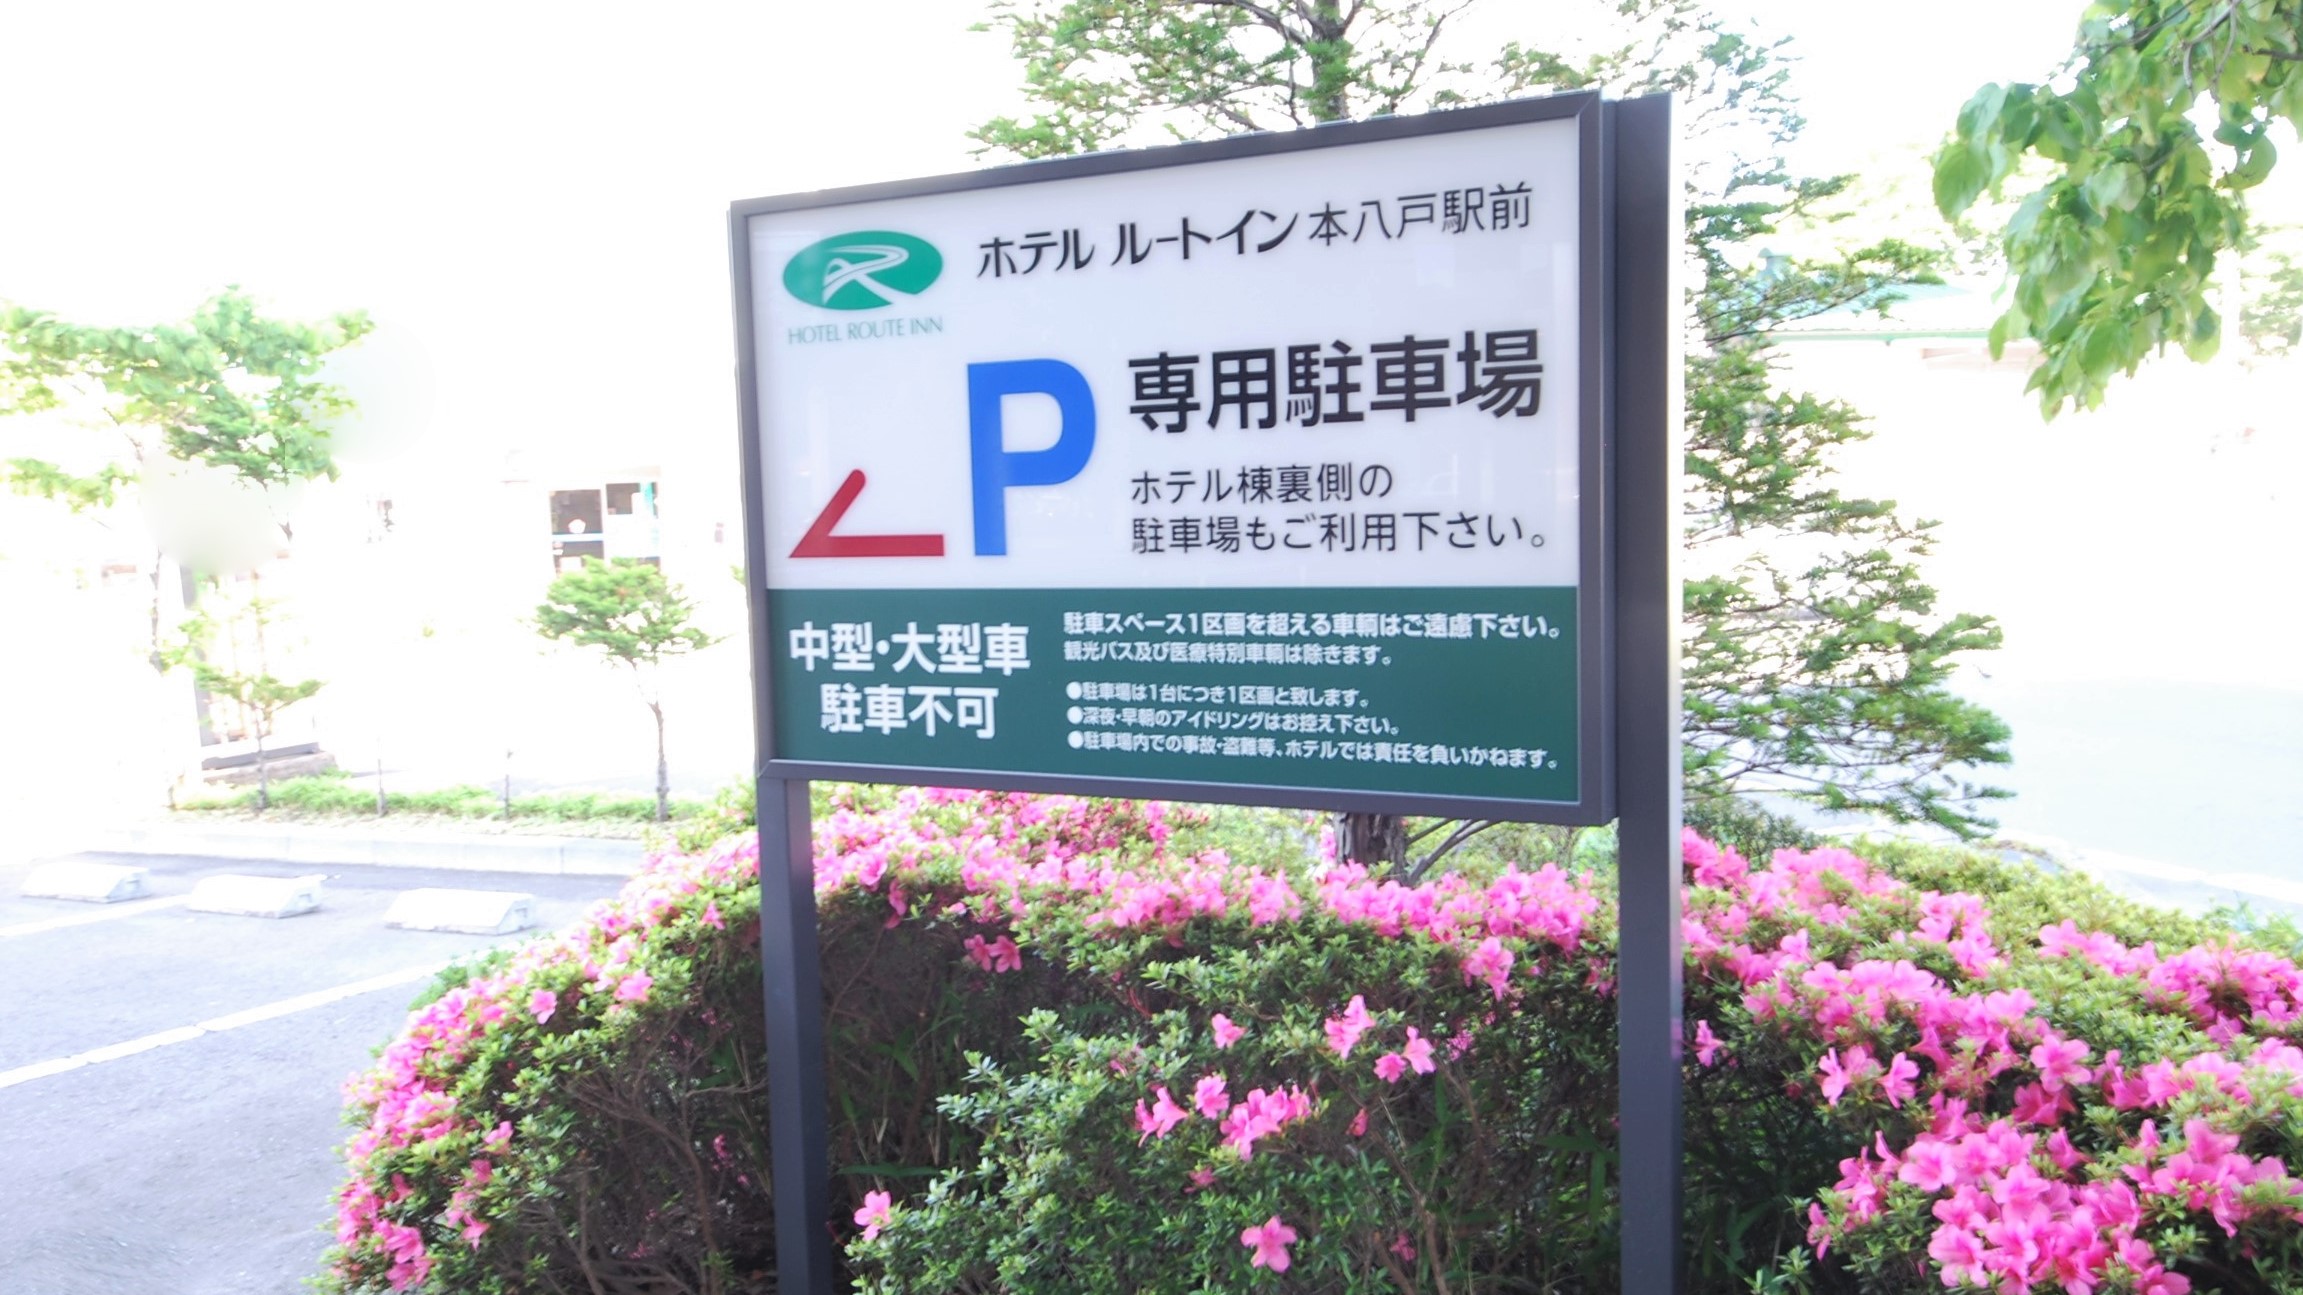 【無料駐車場】平面駐車場・立体駐車場どちらもご用意しております。